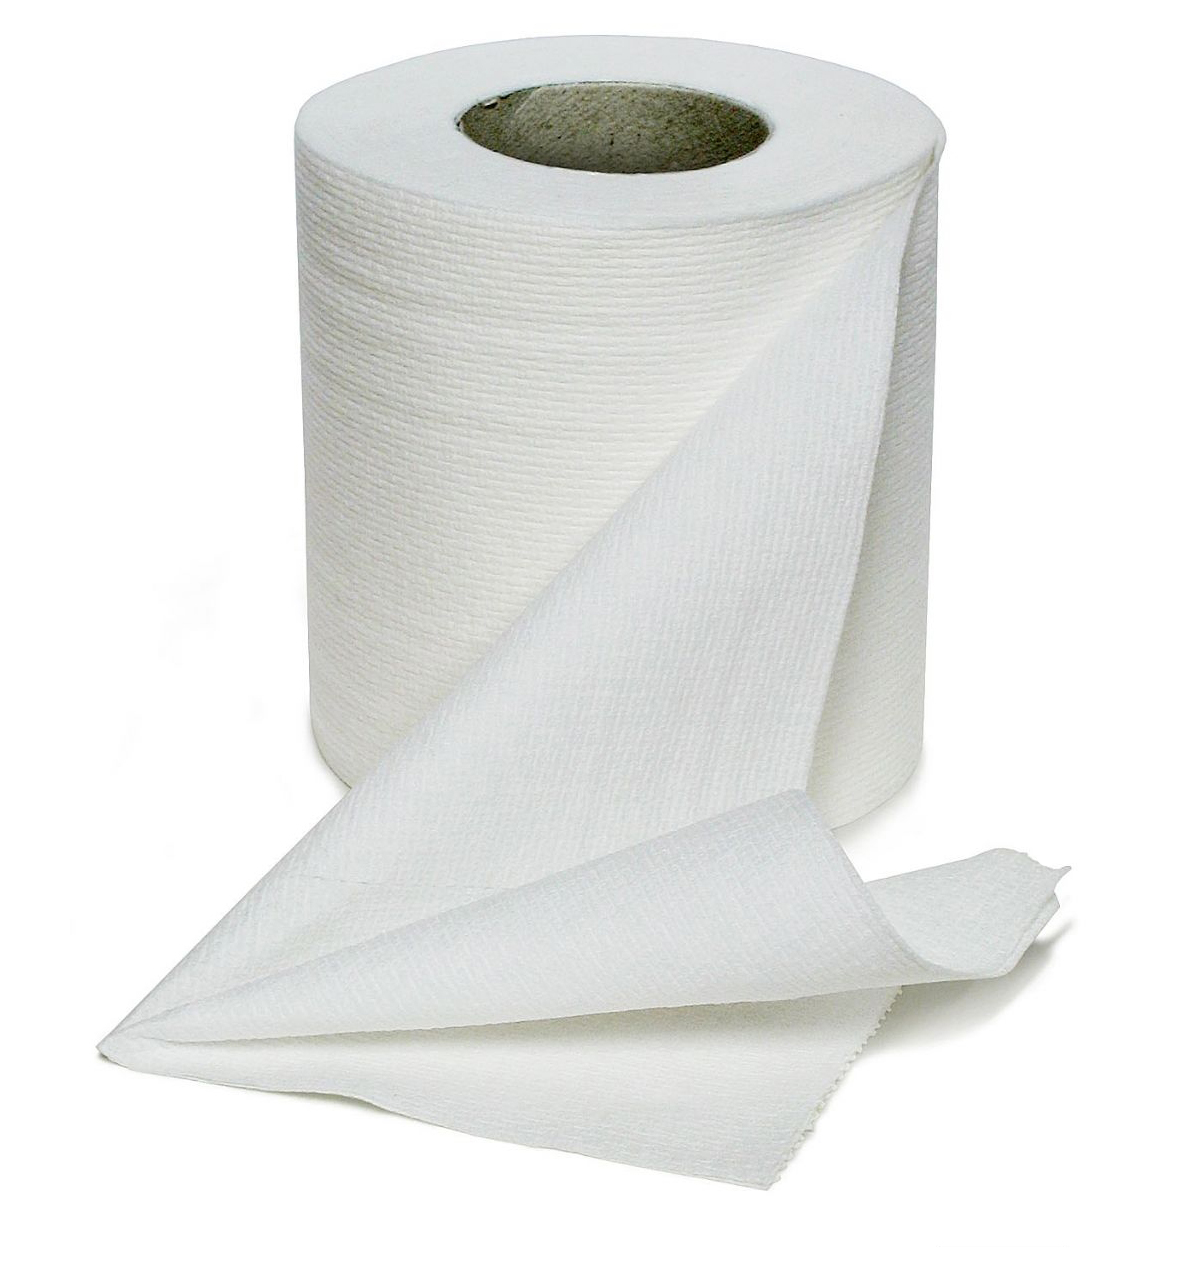 Купить бумагу липецк. Туалетная бумага. Салфетки туалетная бумага. Туалетная бумага расходные материалы. Туалетная бумага с дырочками.